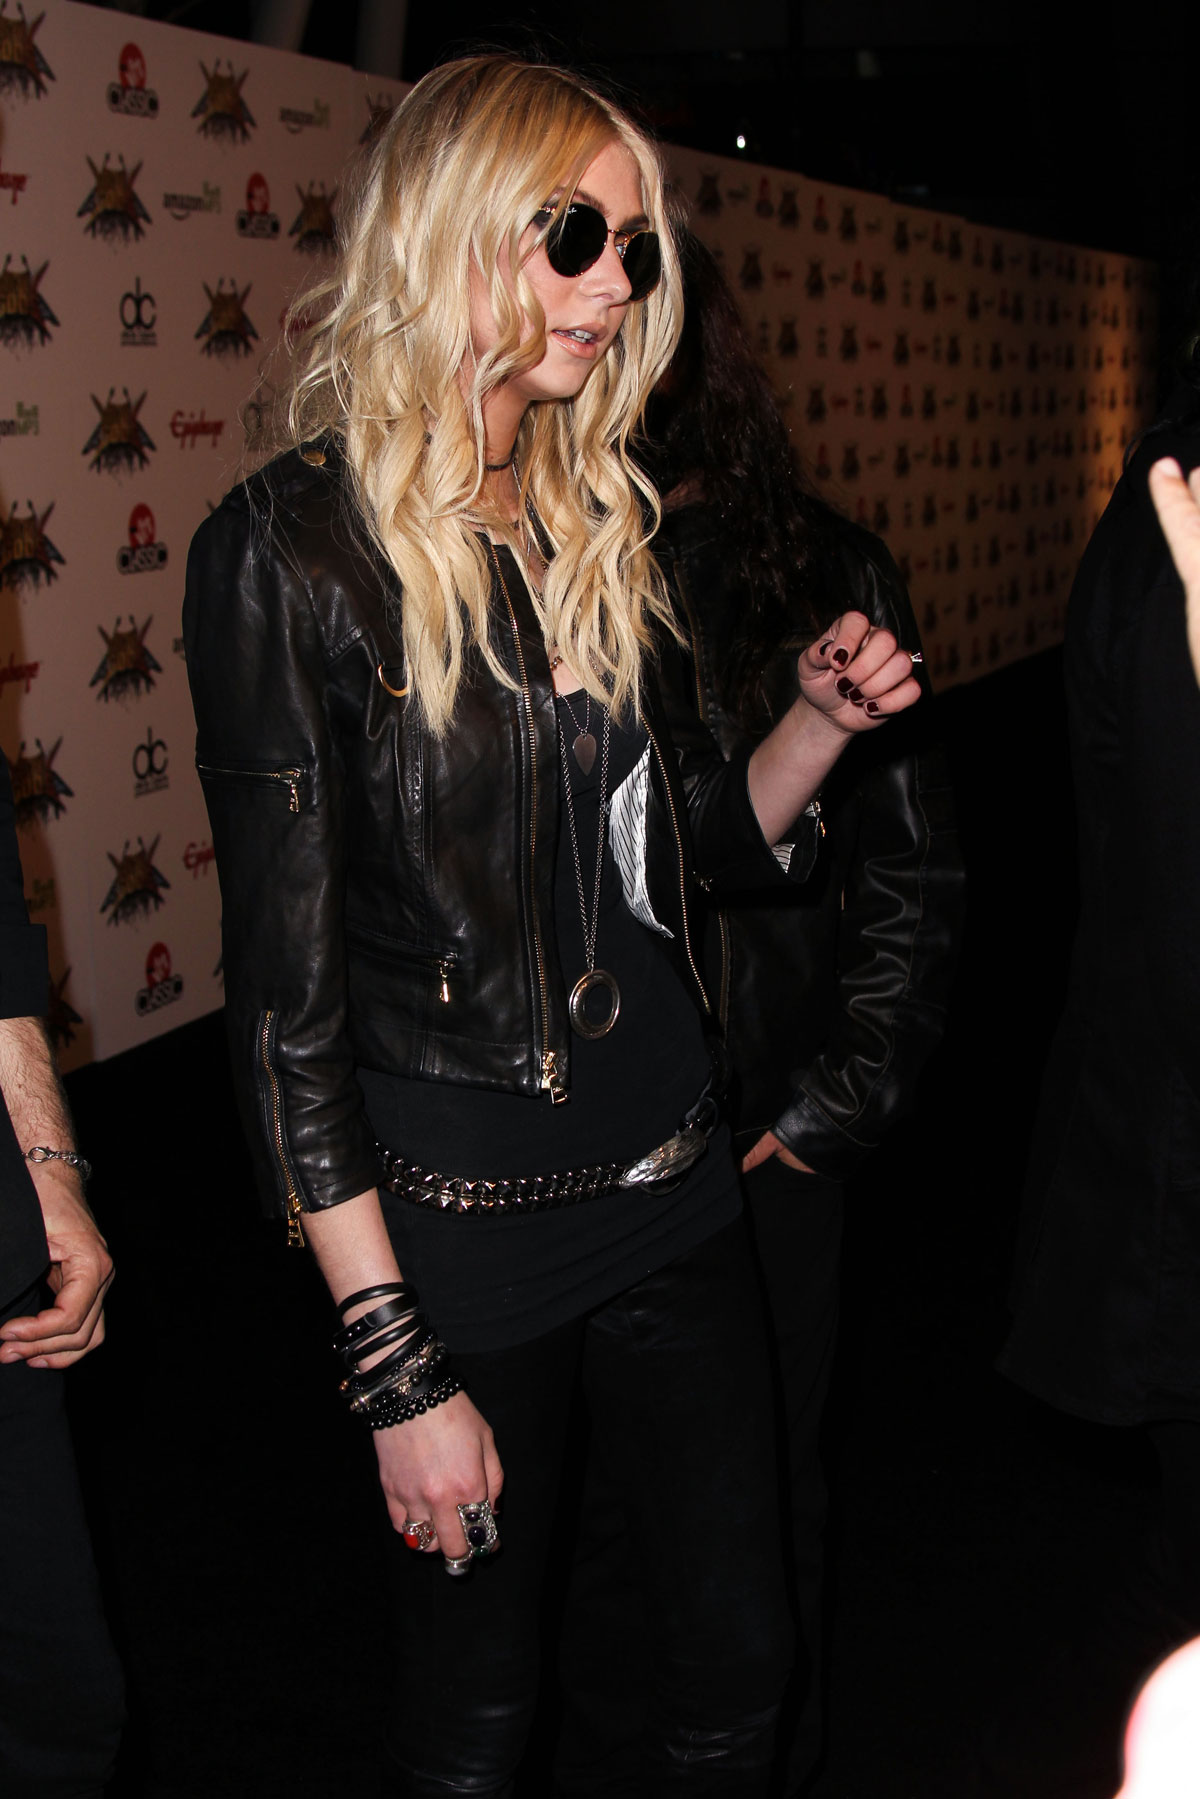 Taylor Momsen attends 2014 Revolver Golden Gods Awards